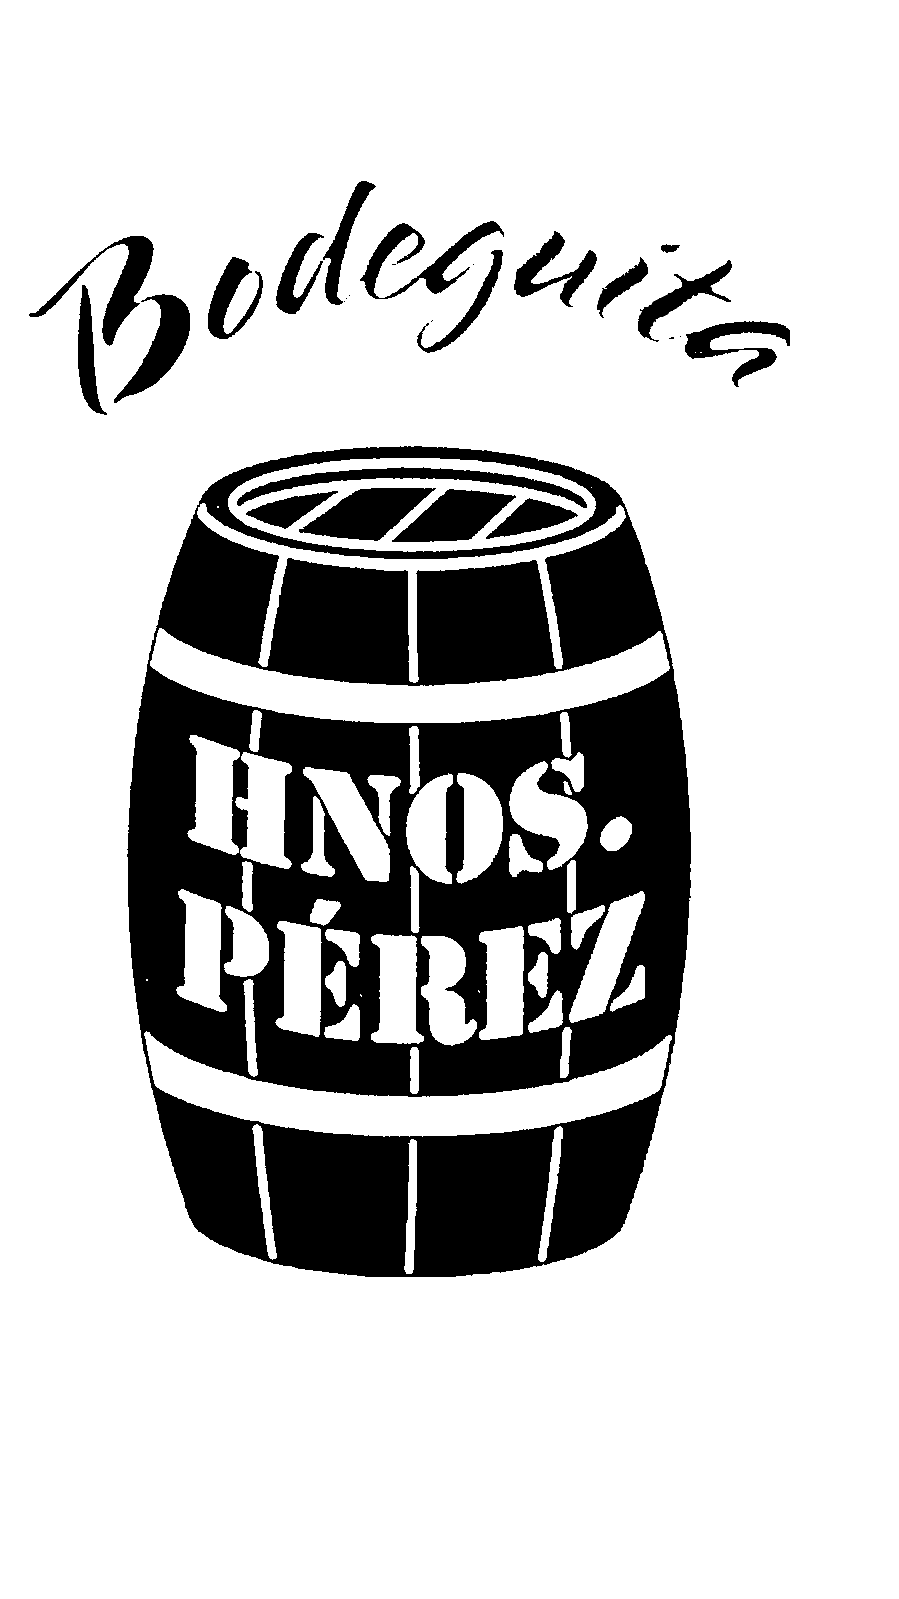 Logo Bodeguita Hnos. Perez